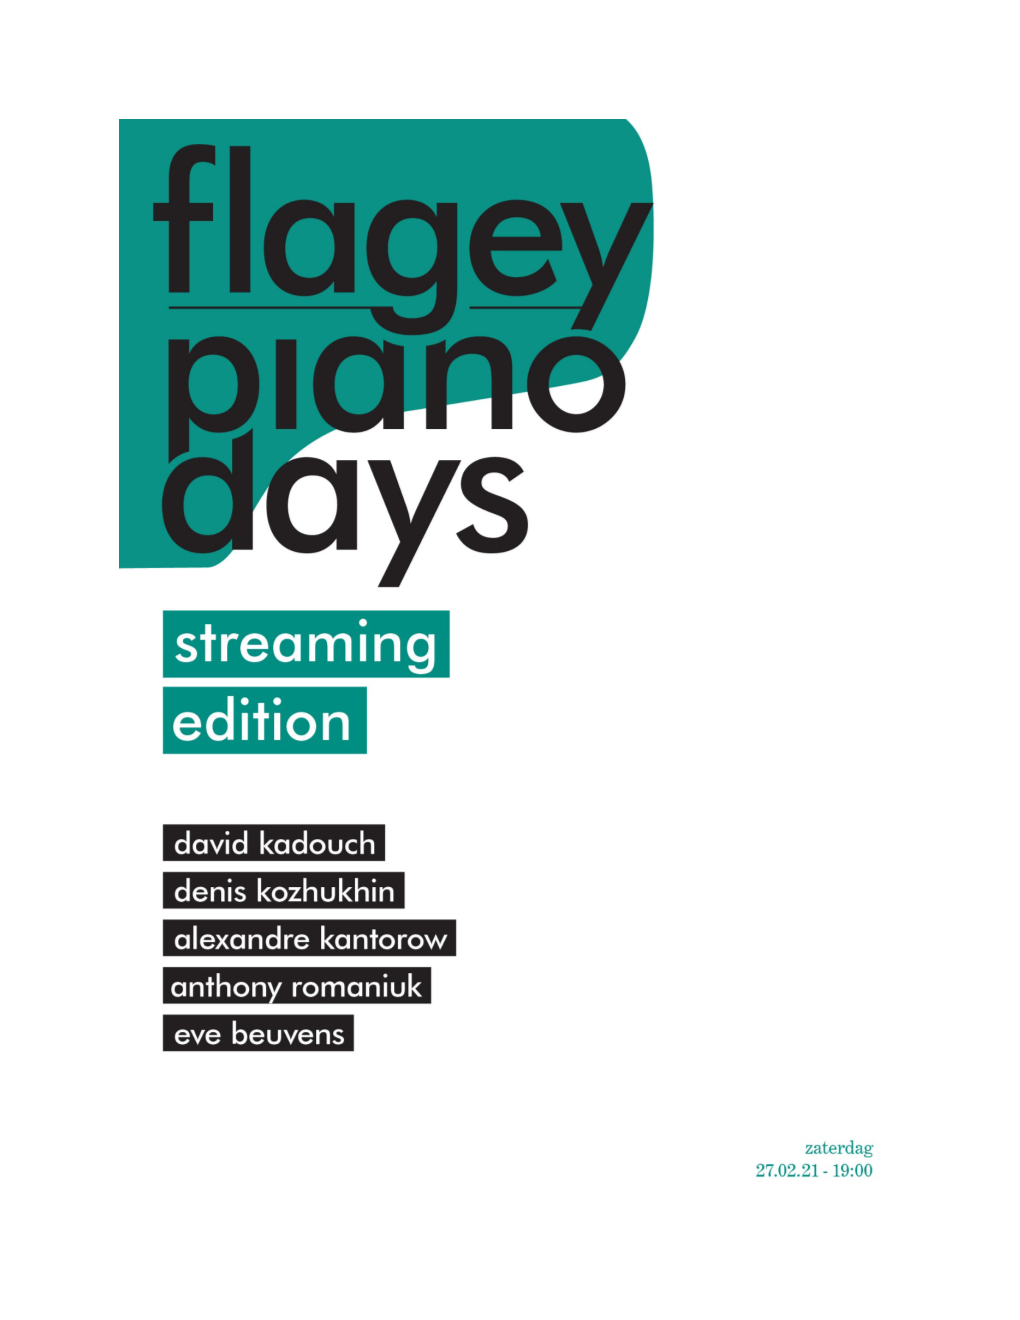 Programma’S, Toelichtingen of Biografieën Om Snel Te Springen Tussen De Verschillende Pianisten Van De Flagey Piano Days